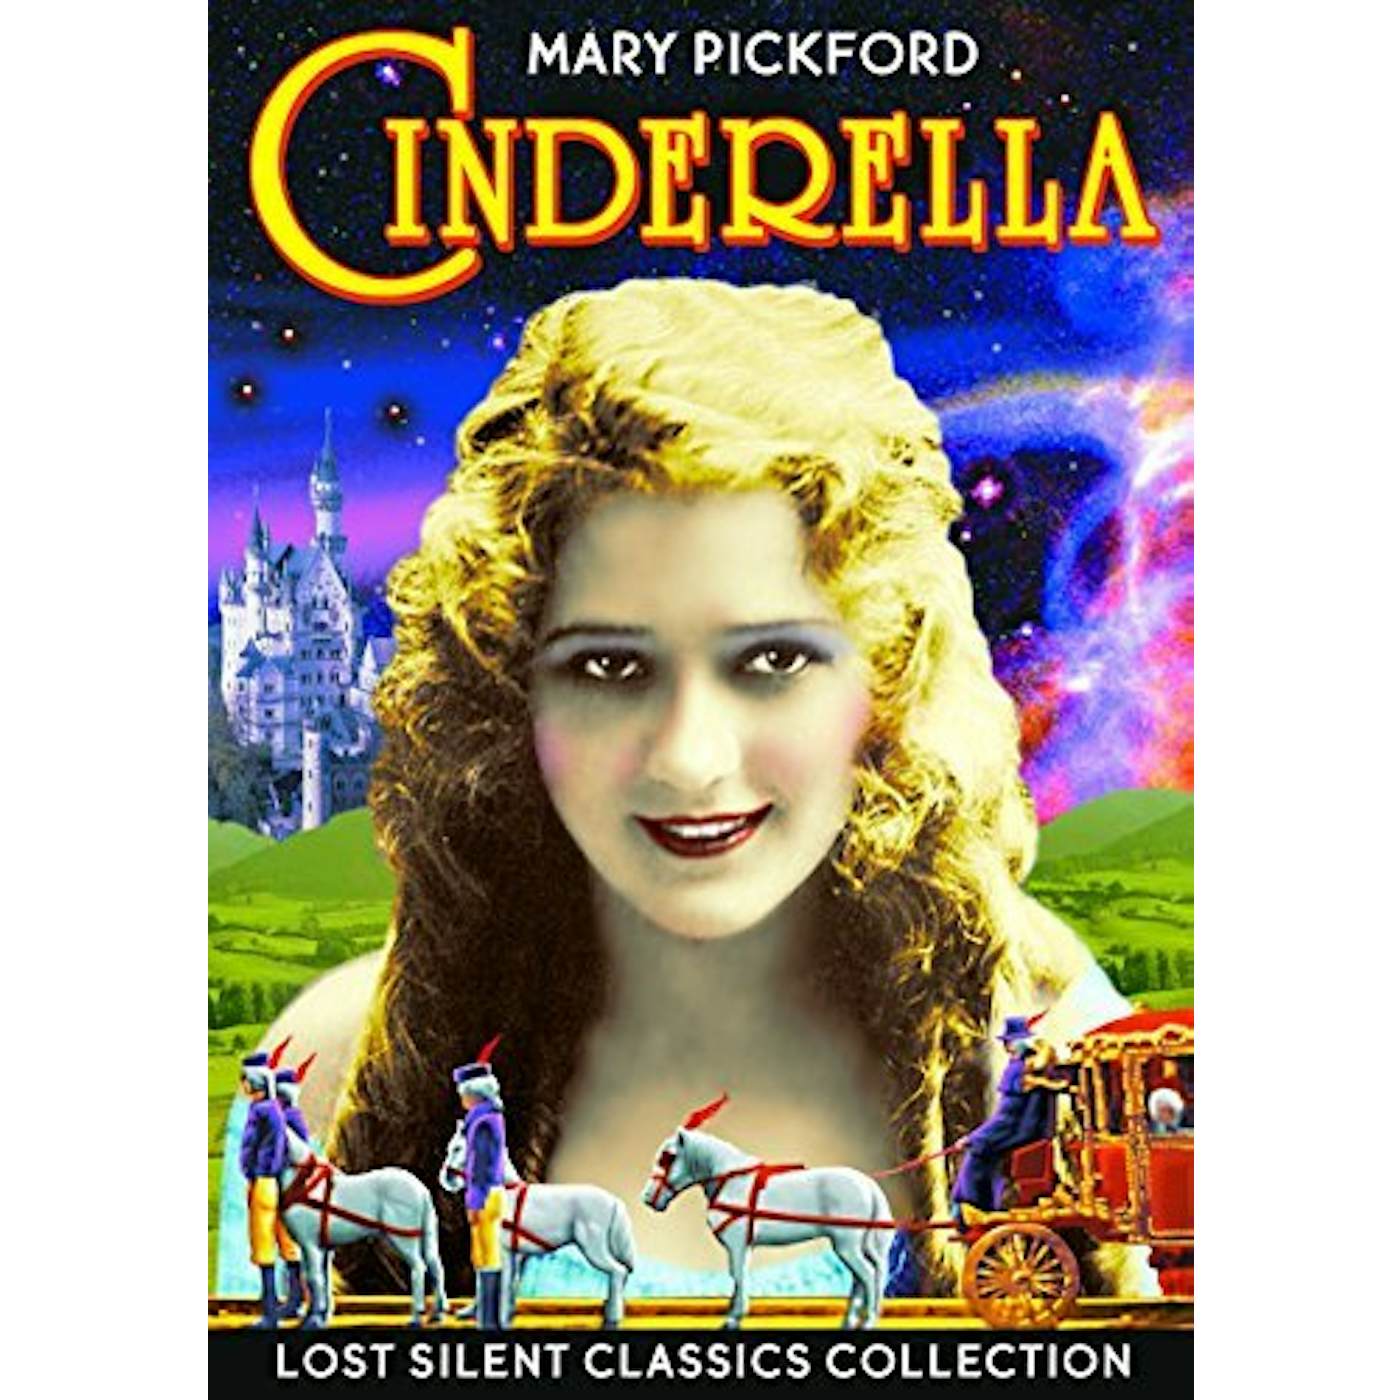 CINDERELLA (1914) DVD